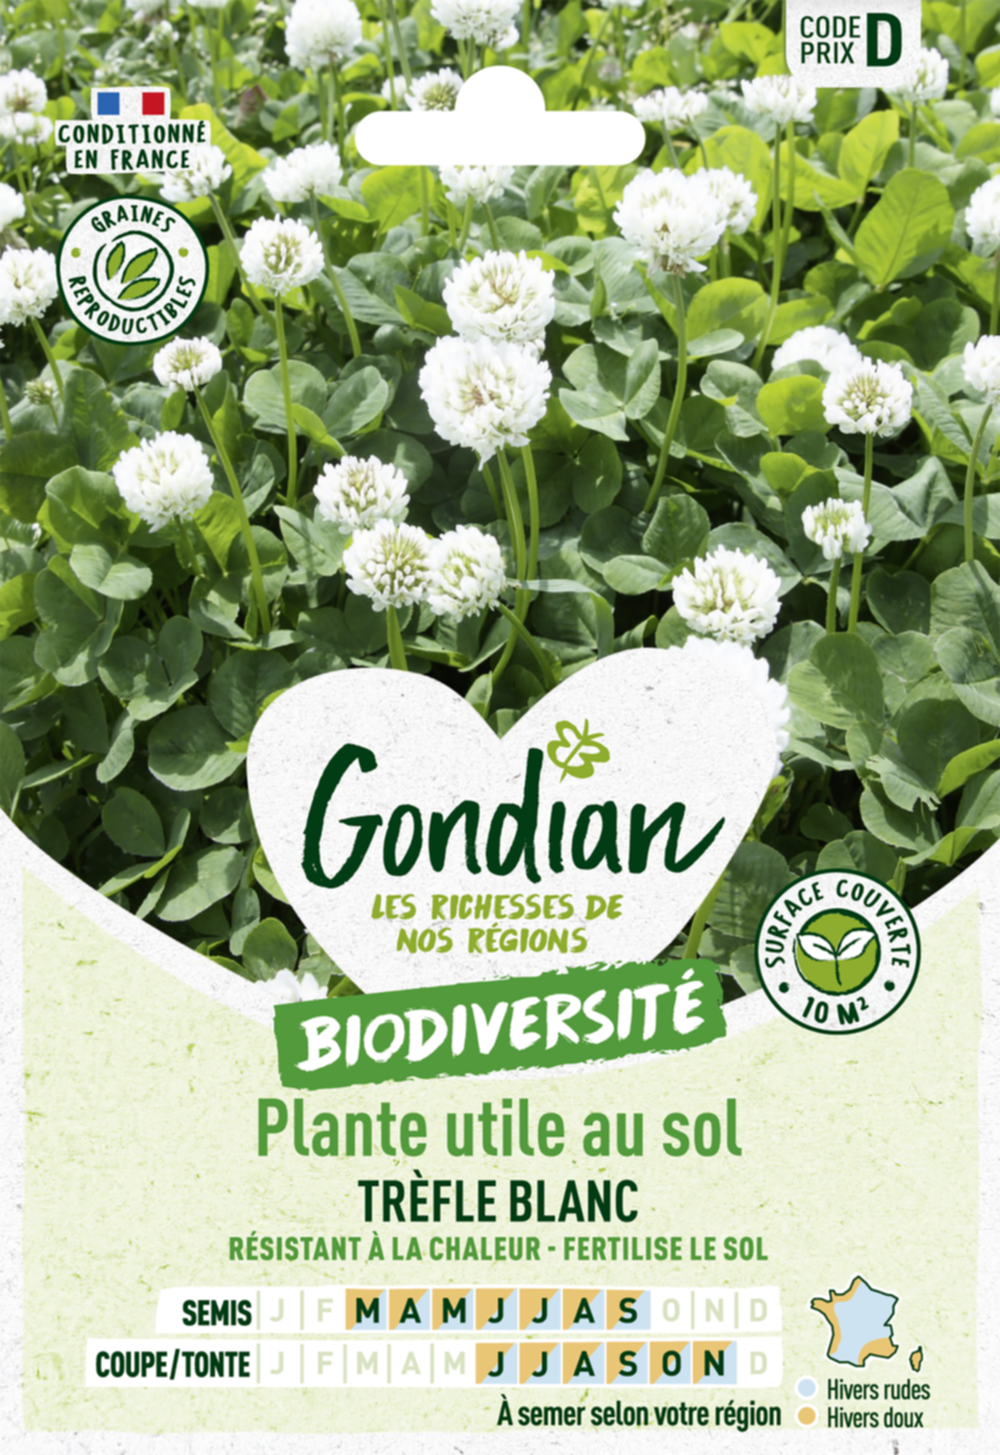 Plantes utiles au sol - Trèfle Blanc - GONDIAN